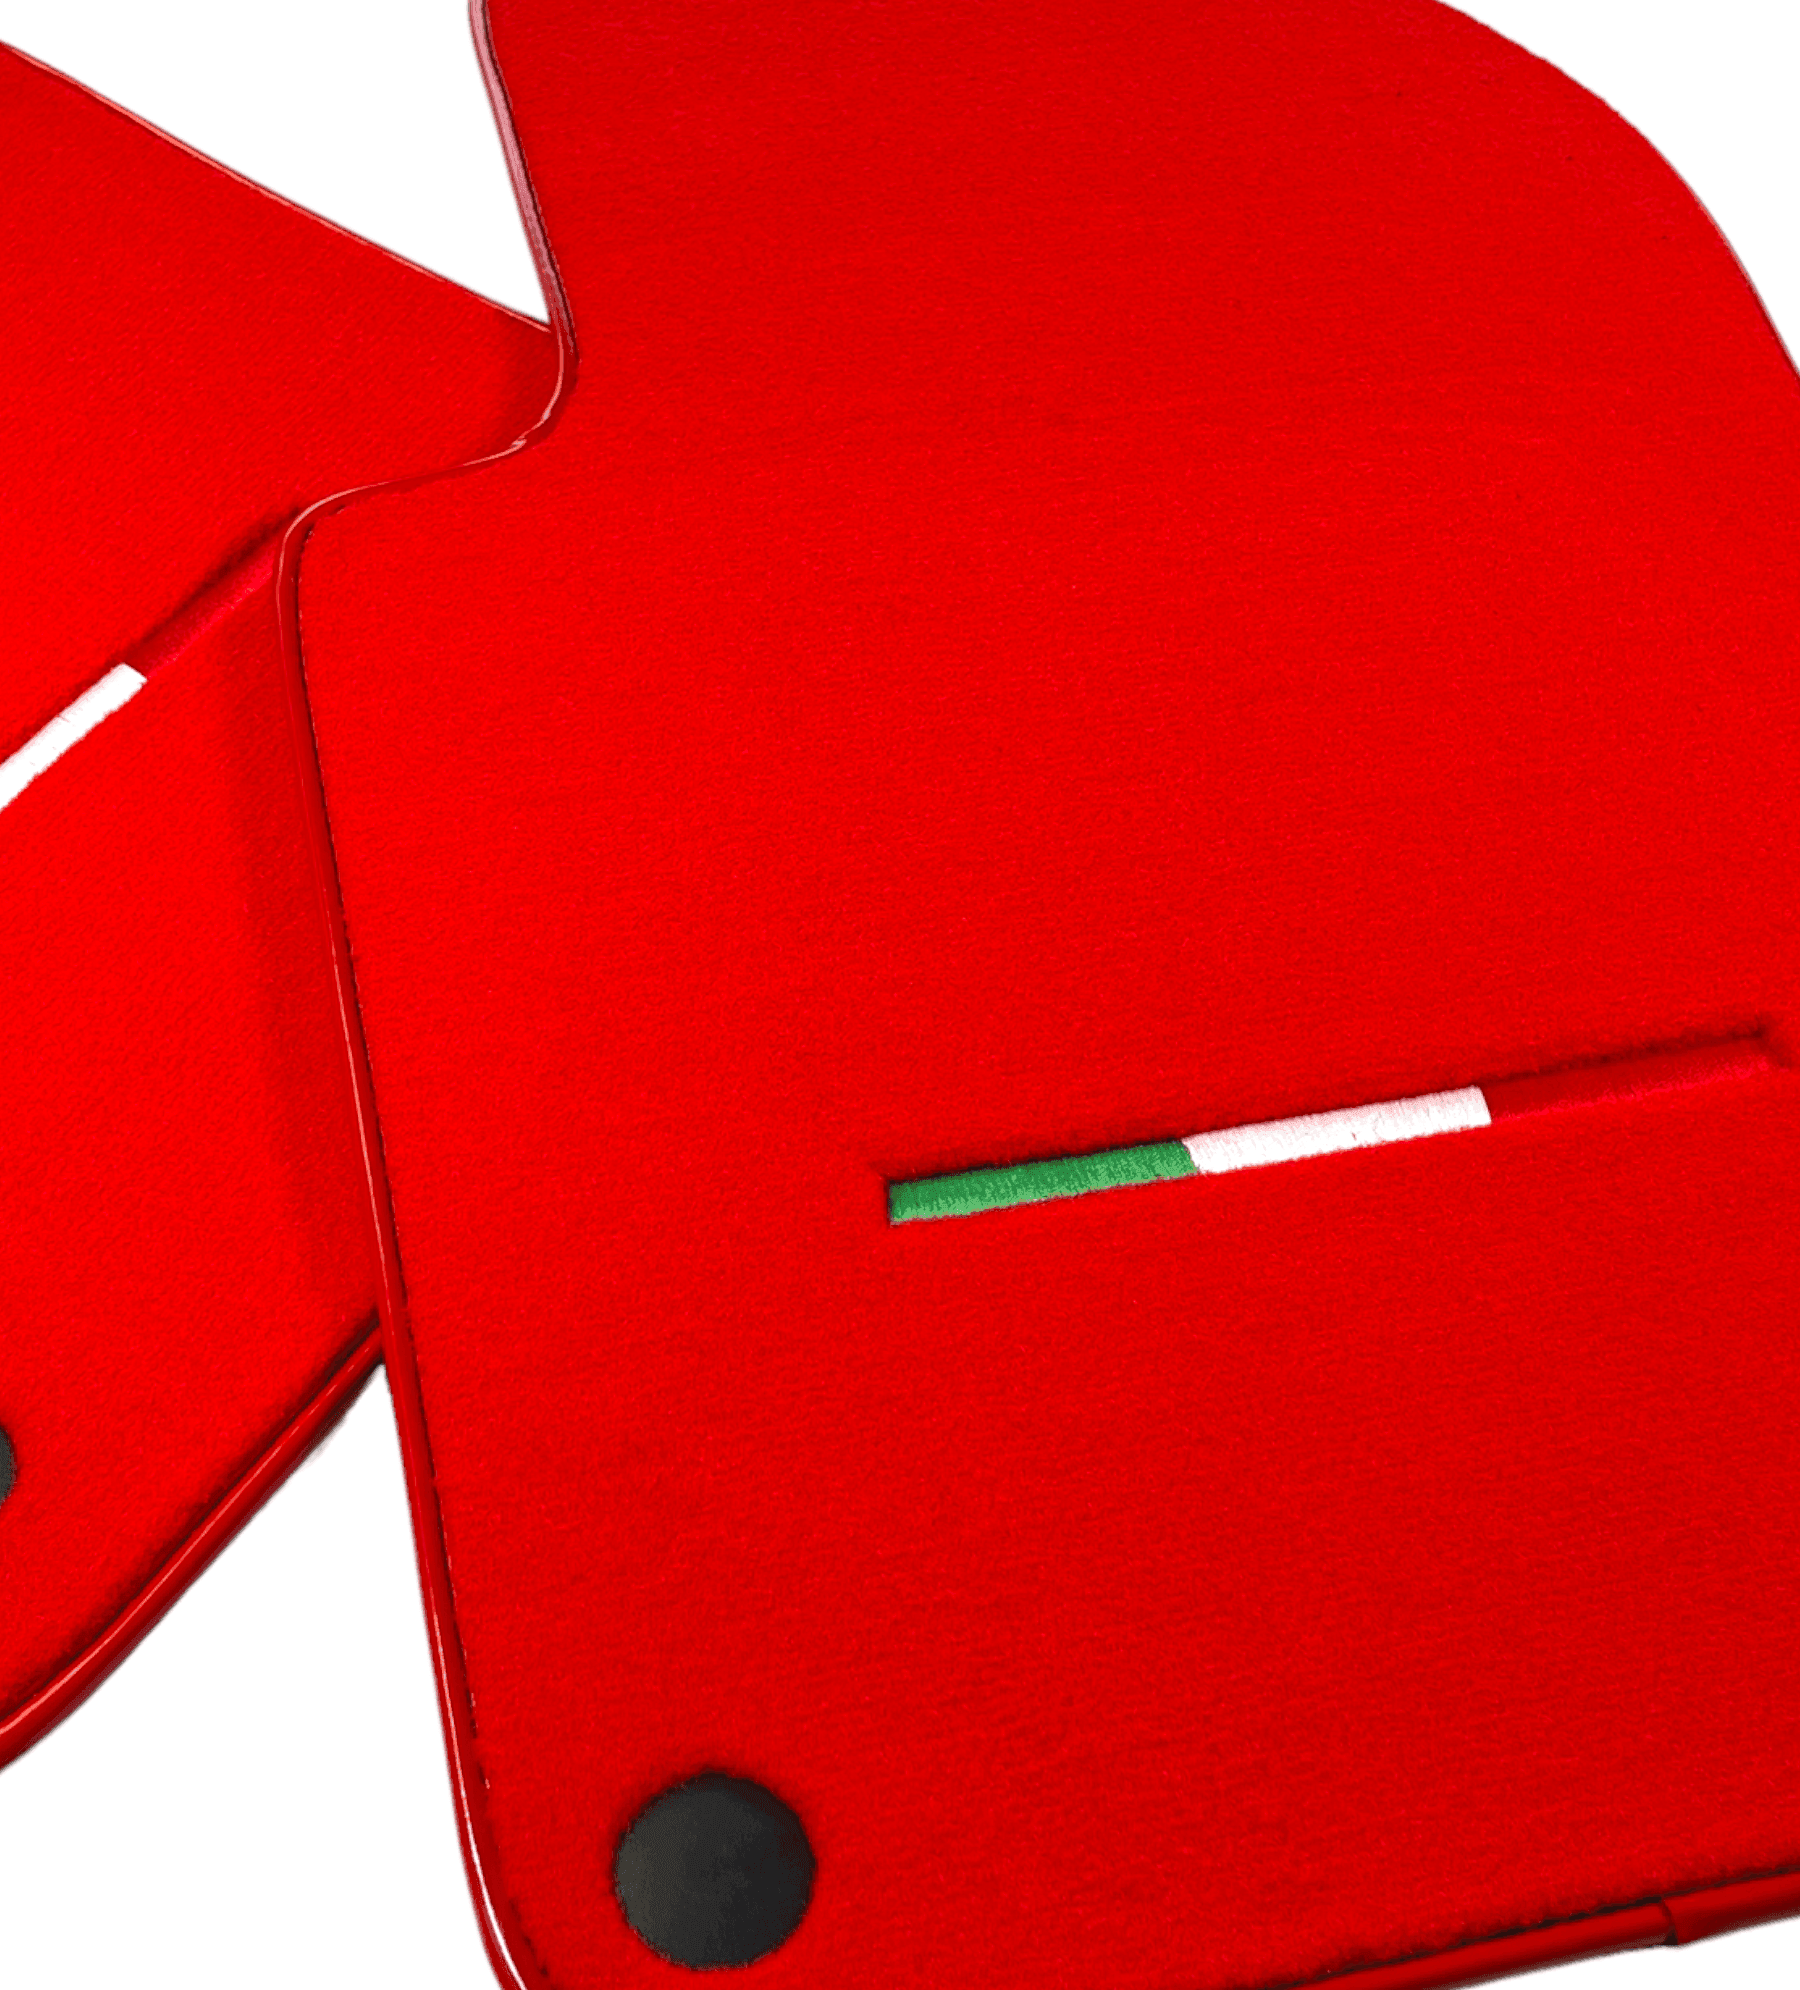 Red Floor Mats For Ferrari 612 Scaglietti 2005-2011 Italian Edition - AutoWin